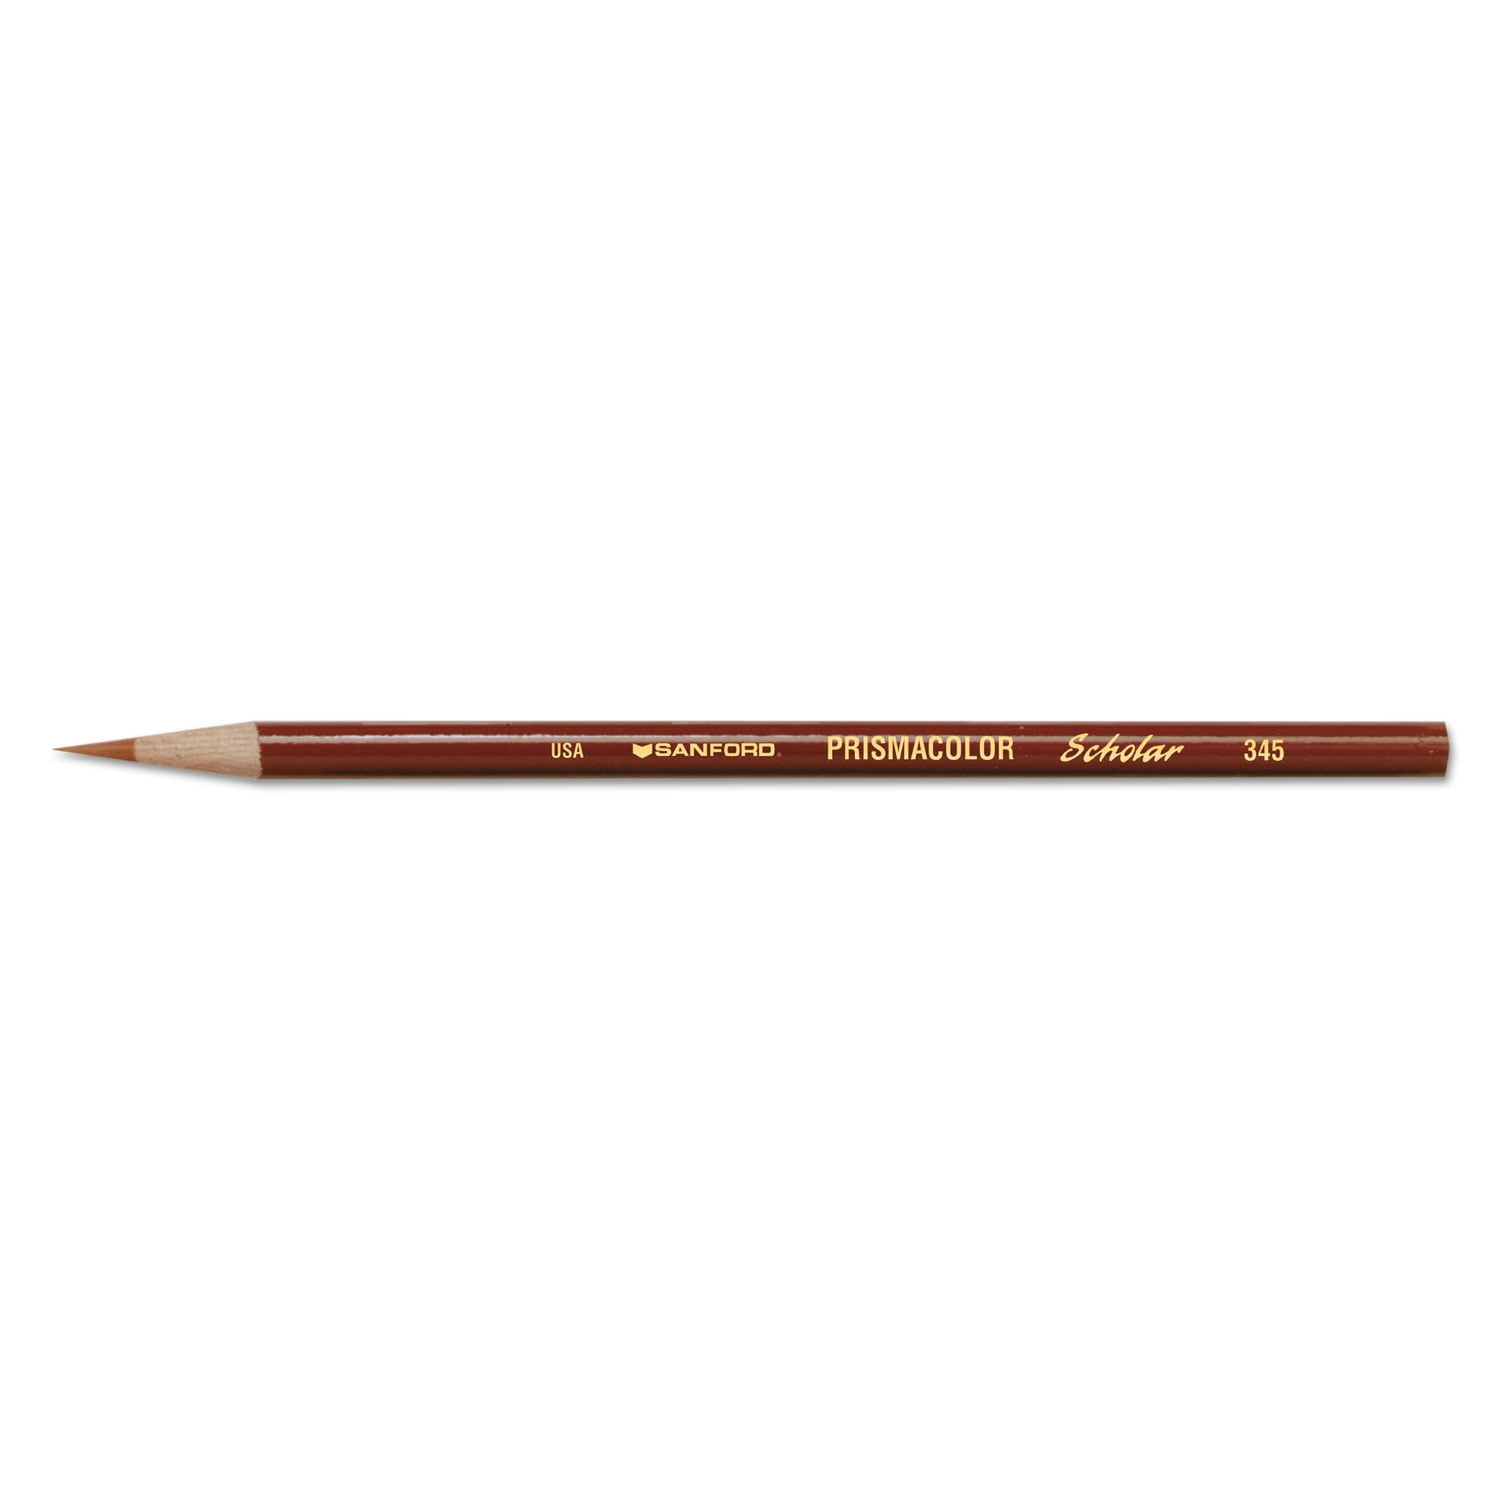 Prismacolor Scholar Art Pencil Set of 60 - 9587541